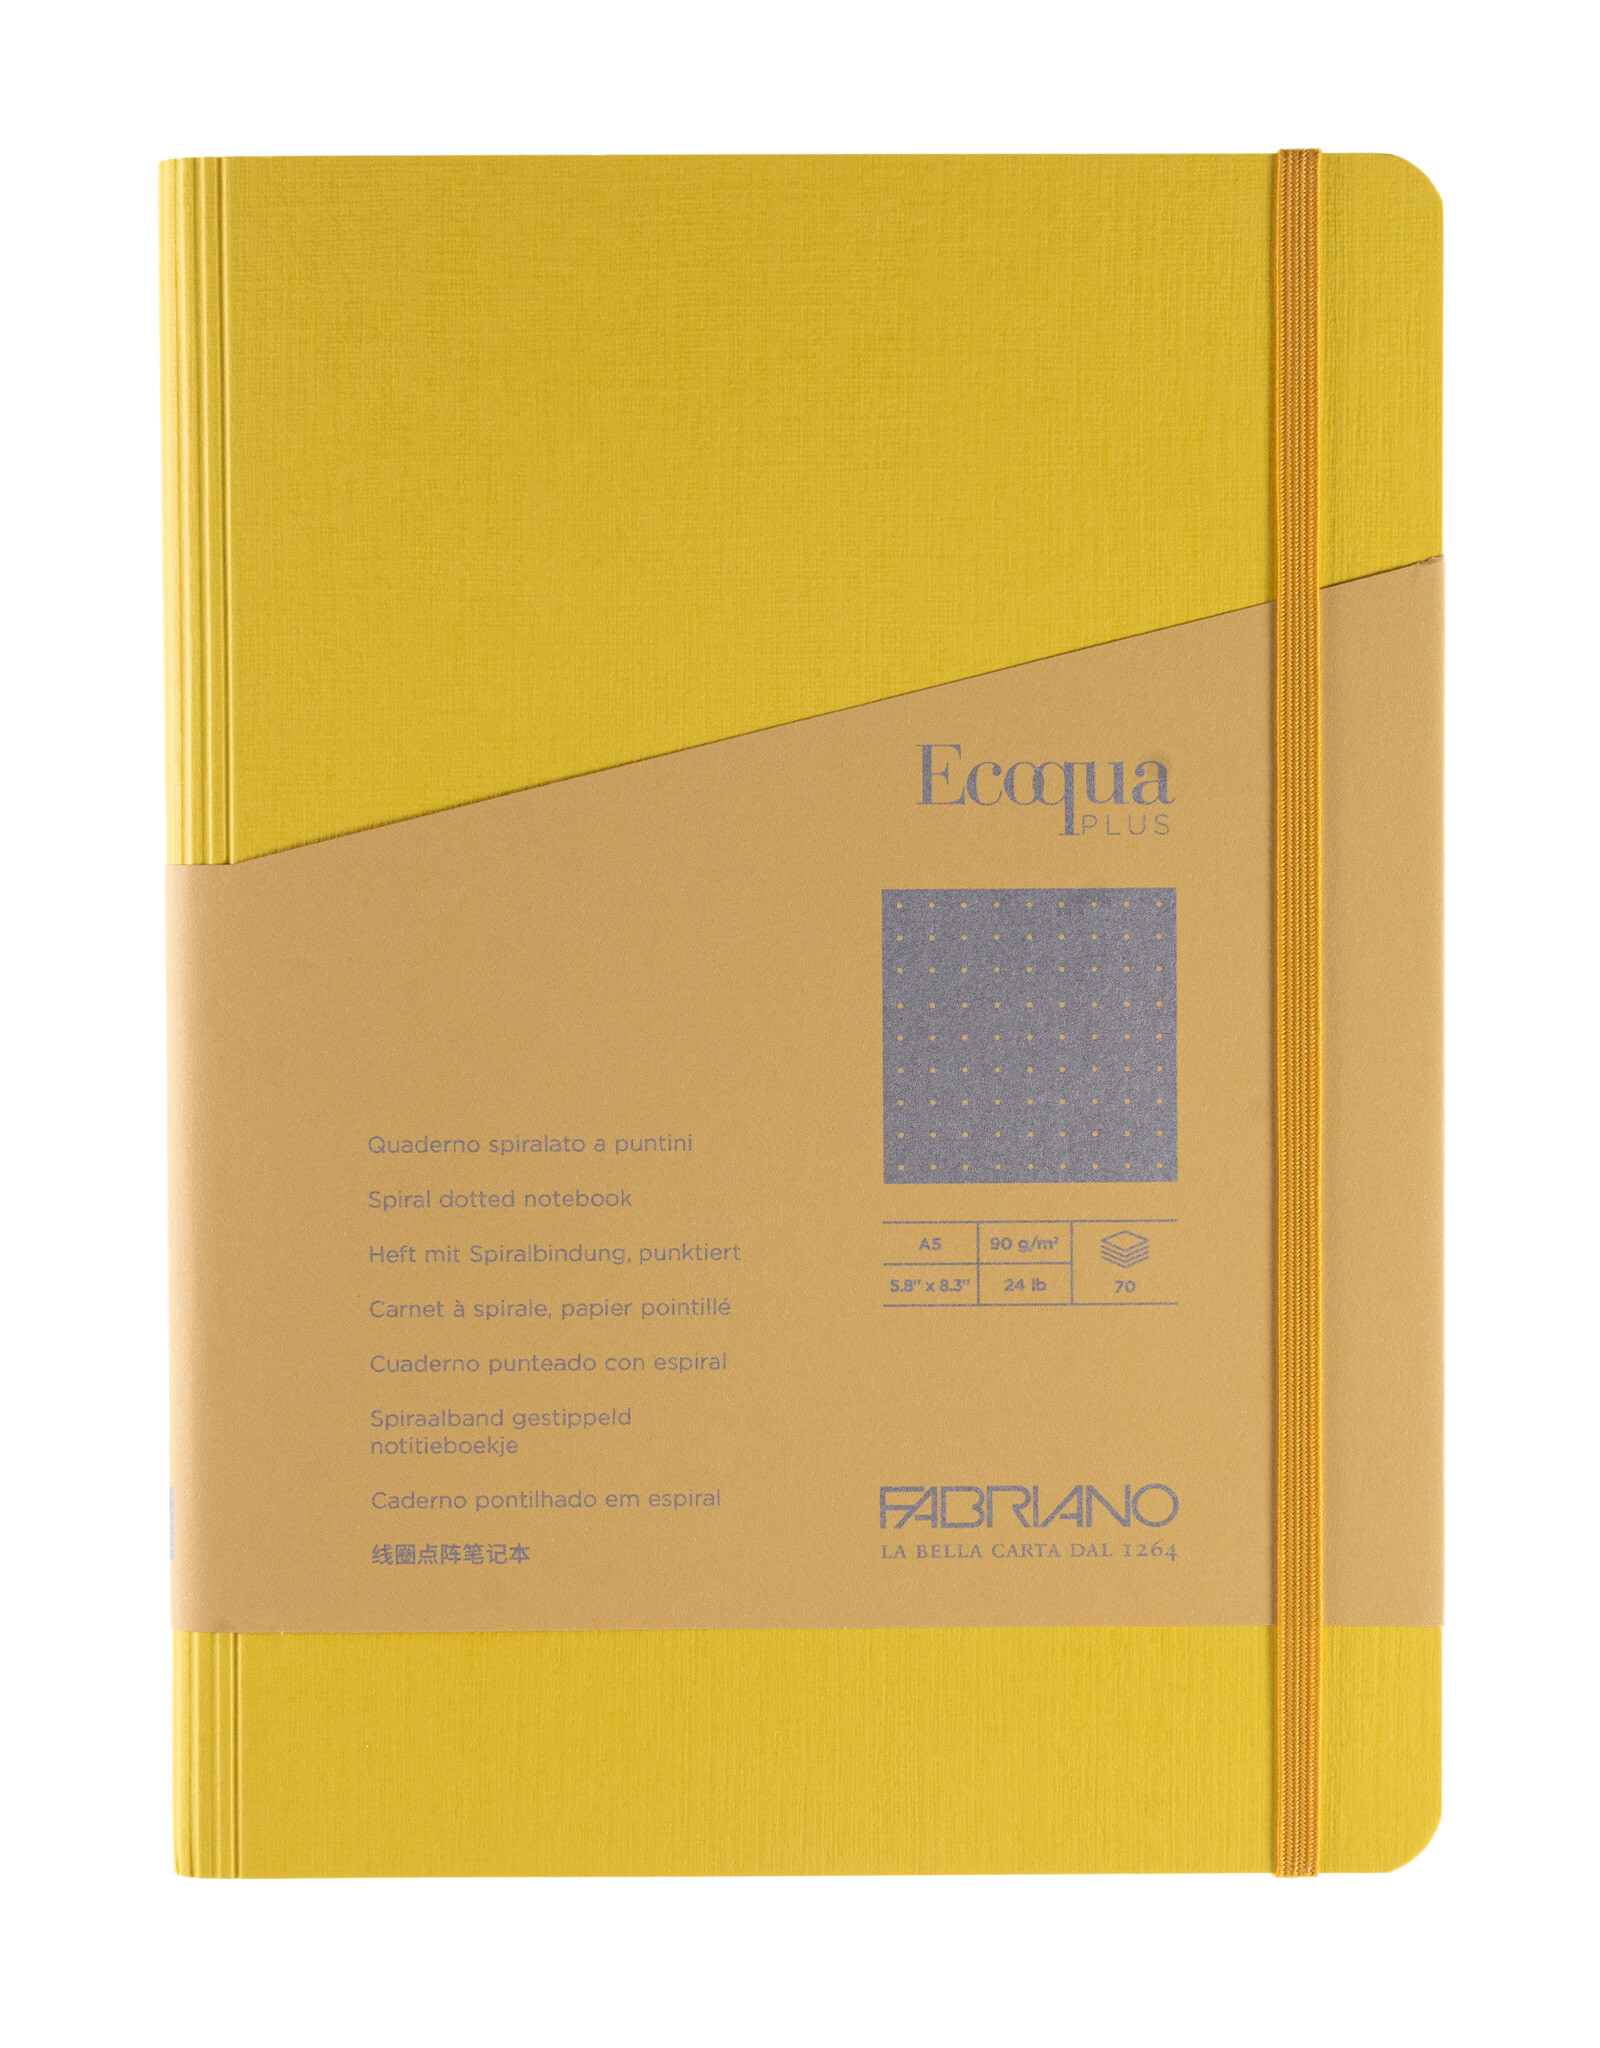 Ecoqua Plus Hidden Spiral Notebook, Yellow, A5, Dotted